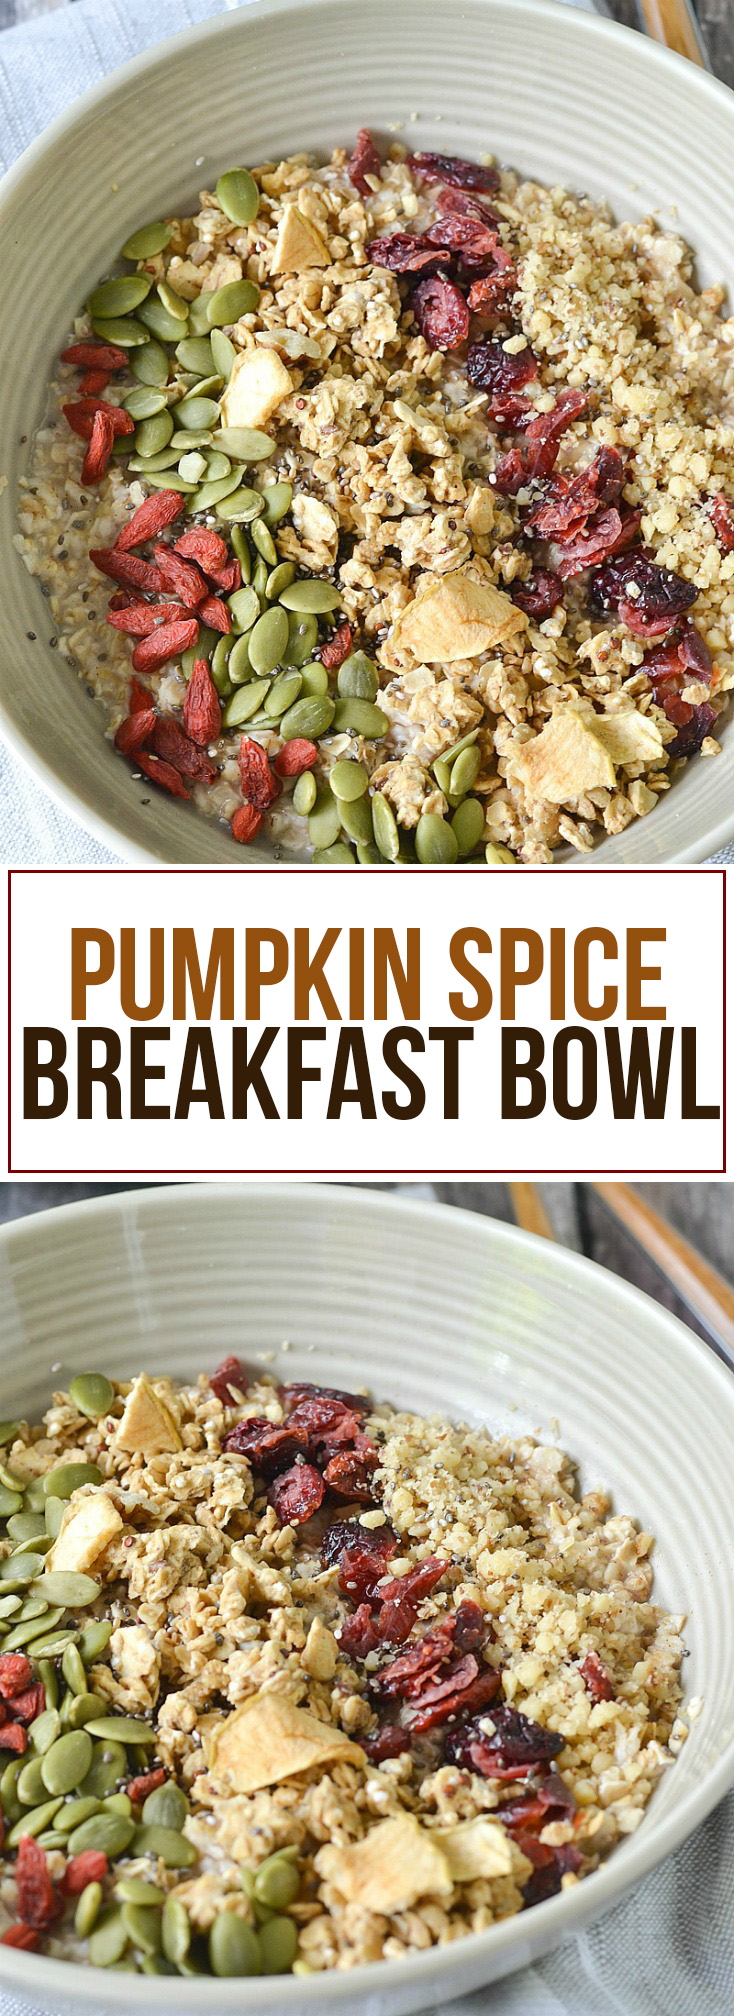 Pumpkin Spice Breakfast Bowls | www.motherthyme.com